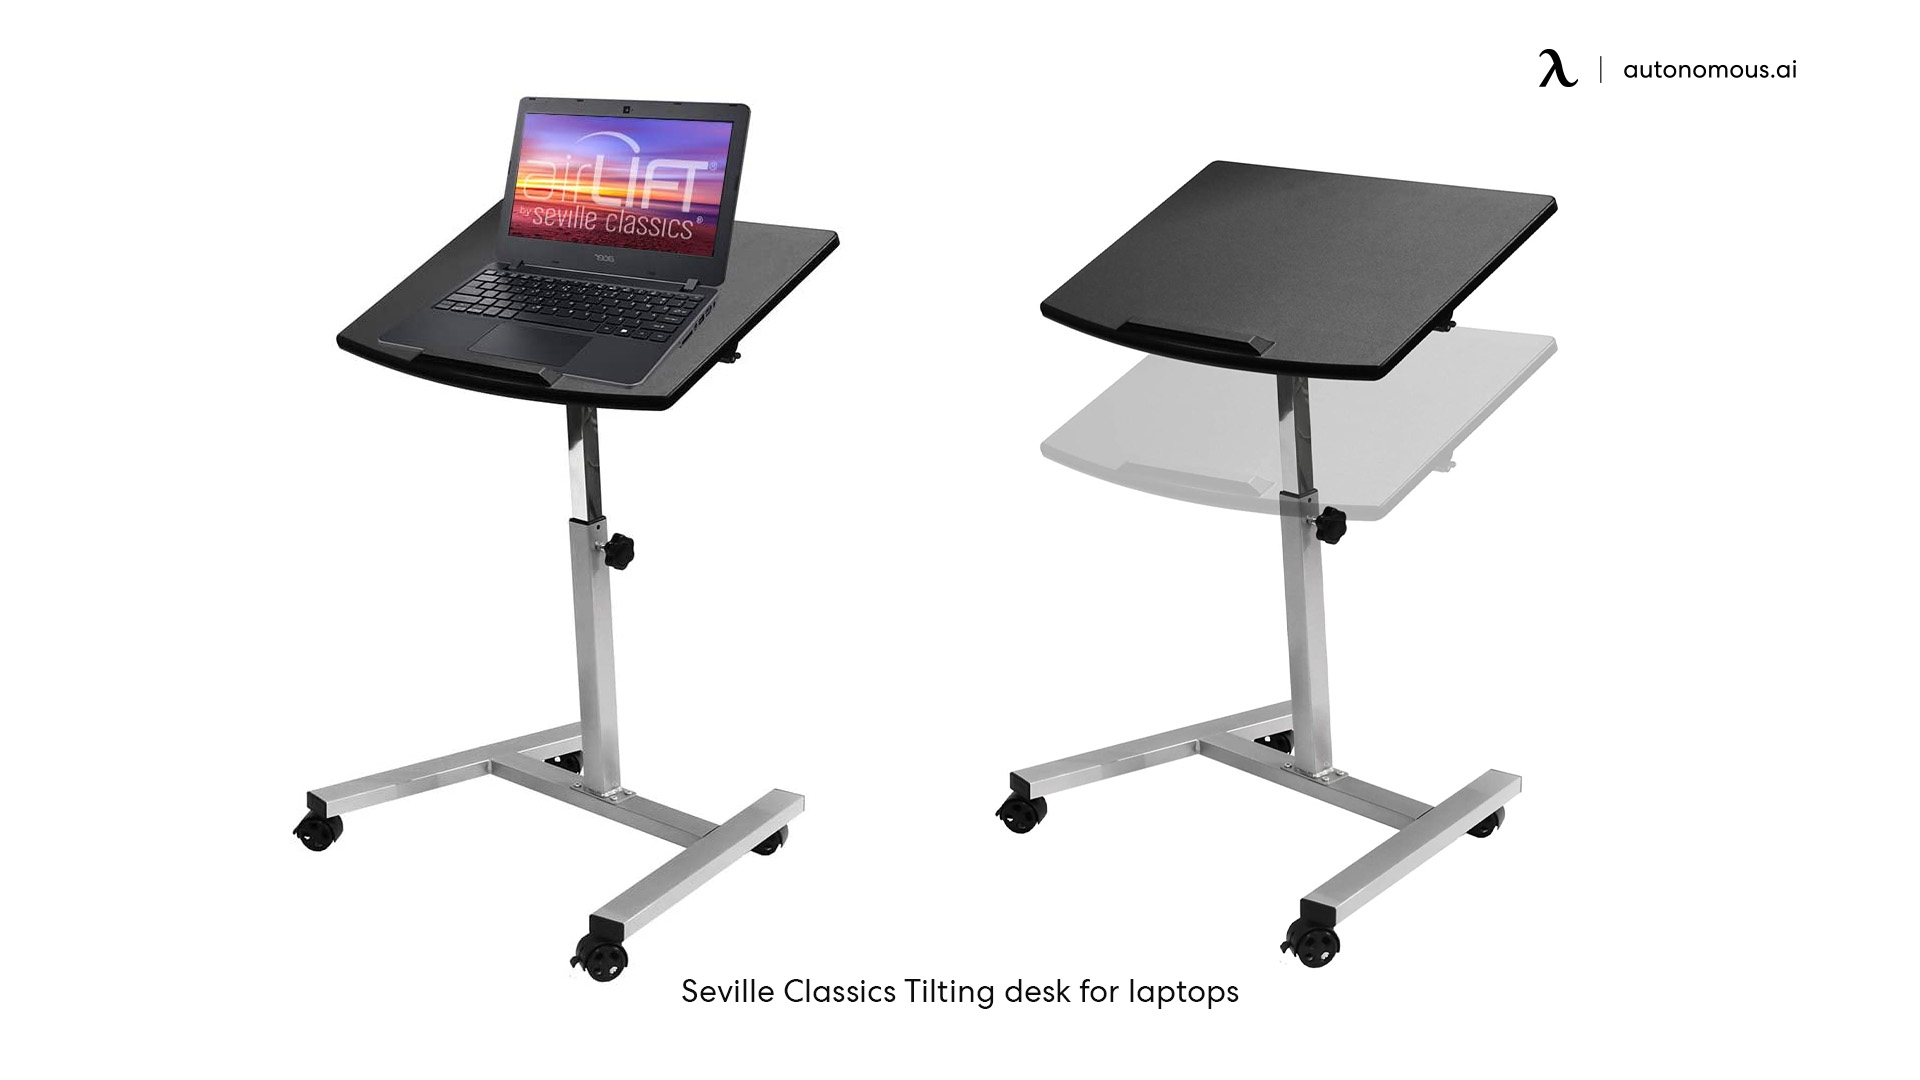 Seville Classics Tilting desk for laptops